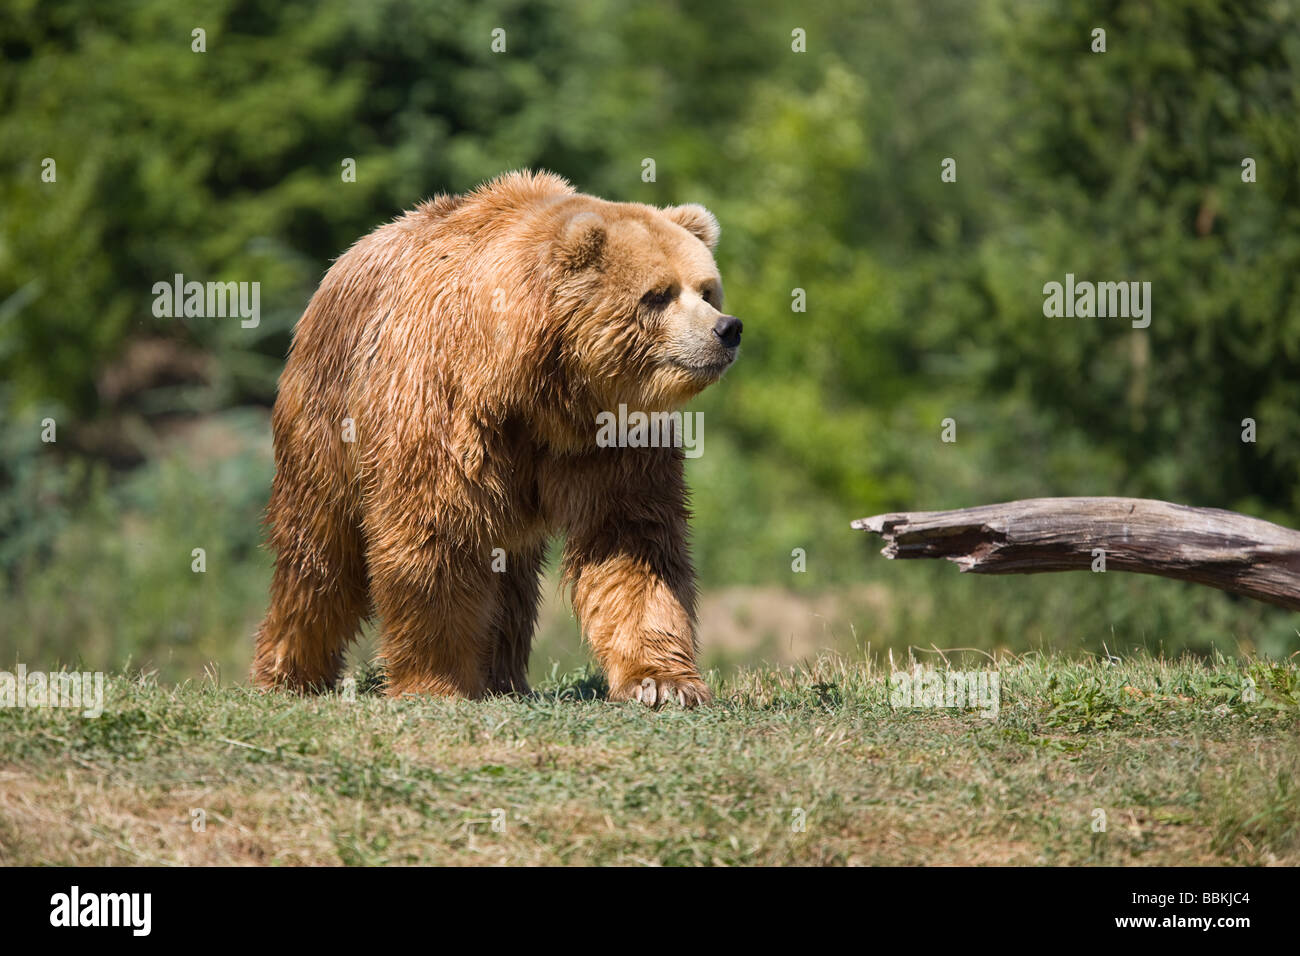 Kodiak Bear or Alaskan brown bear - Ursus arctos middendorffi Stock Photo